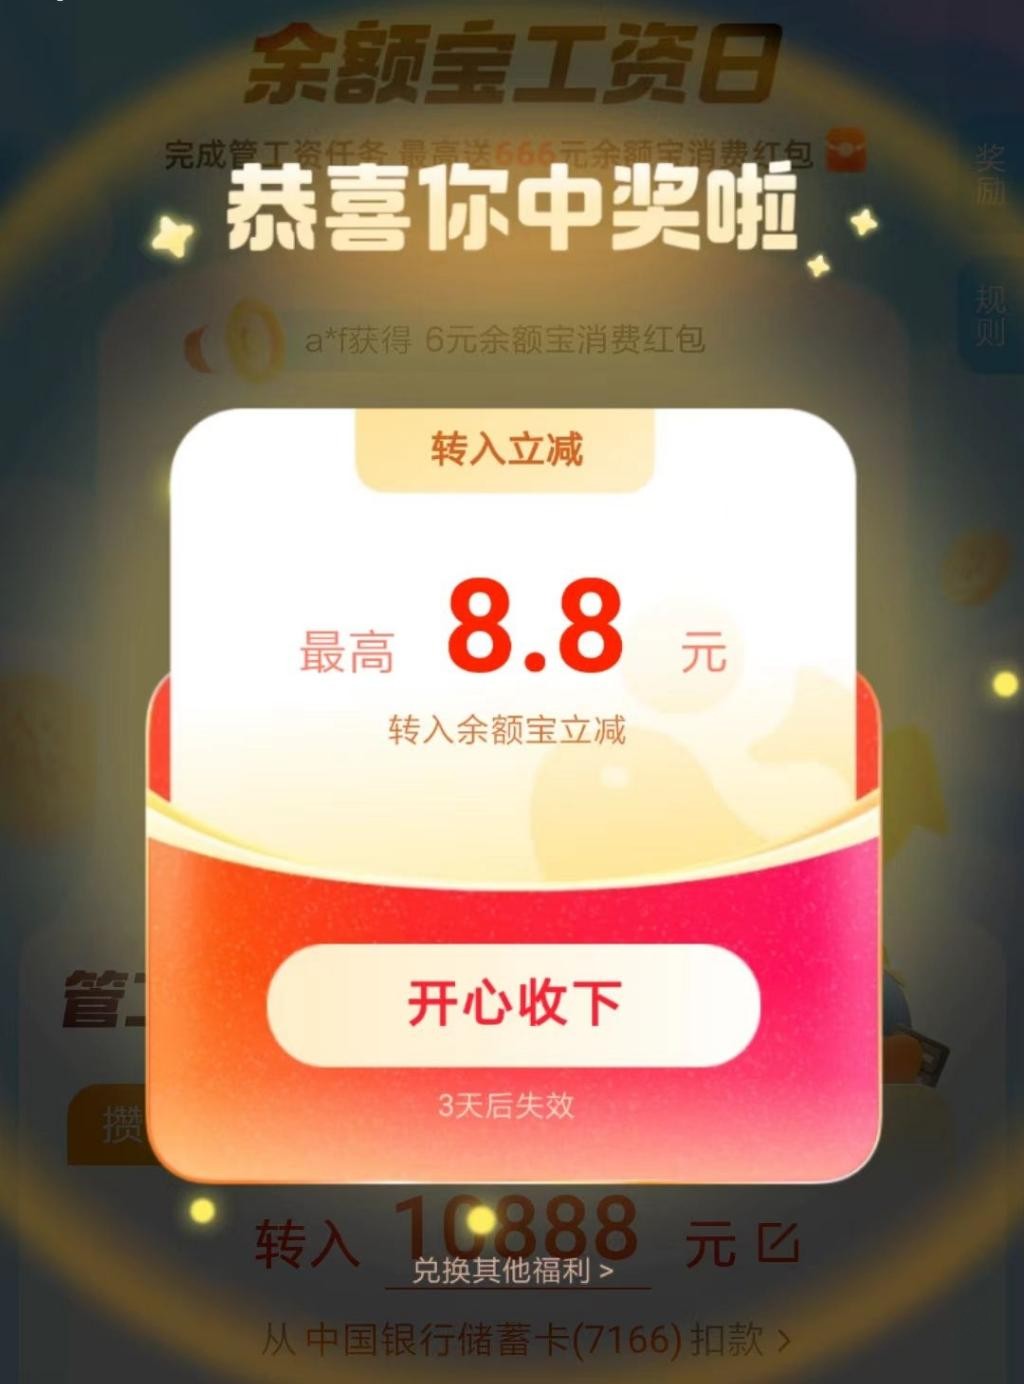 ZFB 8.8元红包-惠小助(52huixz.com)